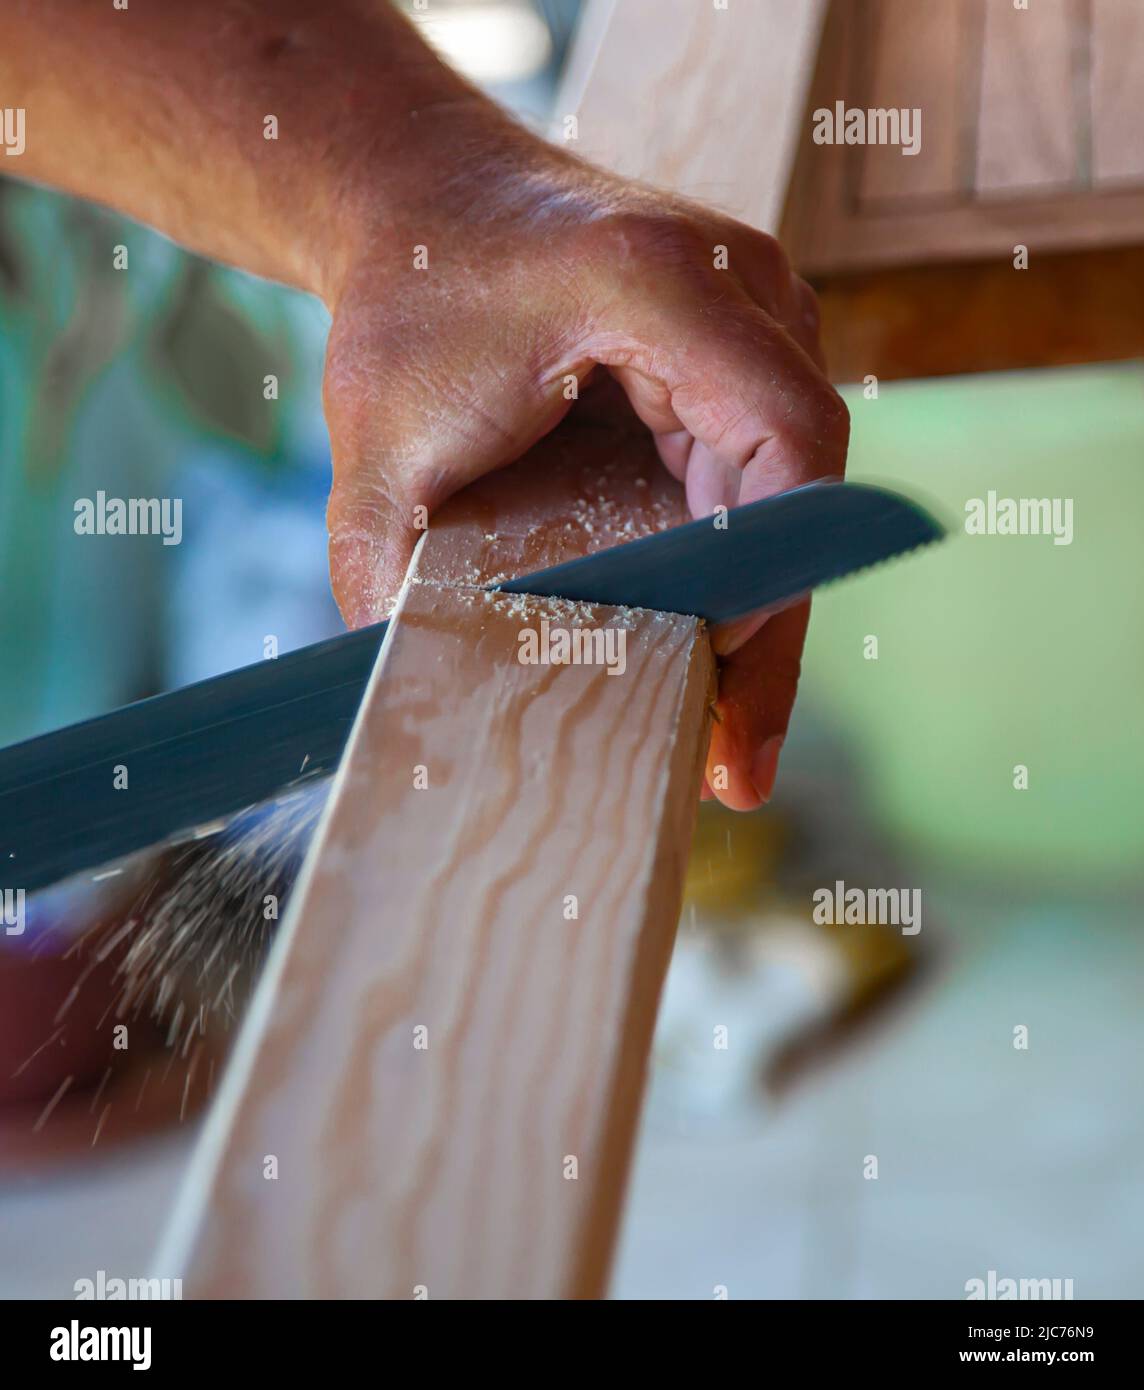 Mains de menuisier - coupe de la planche en bois par scie. Gros plan et vertical. Banque D'Images